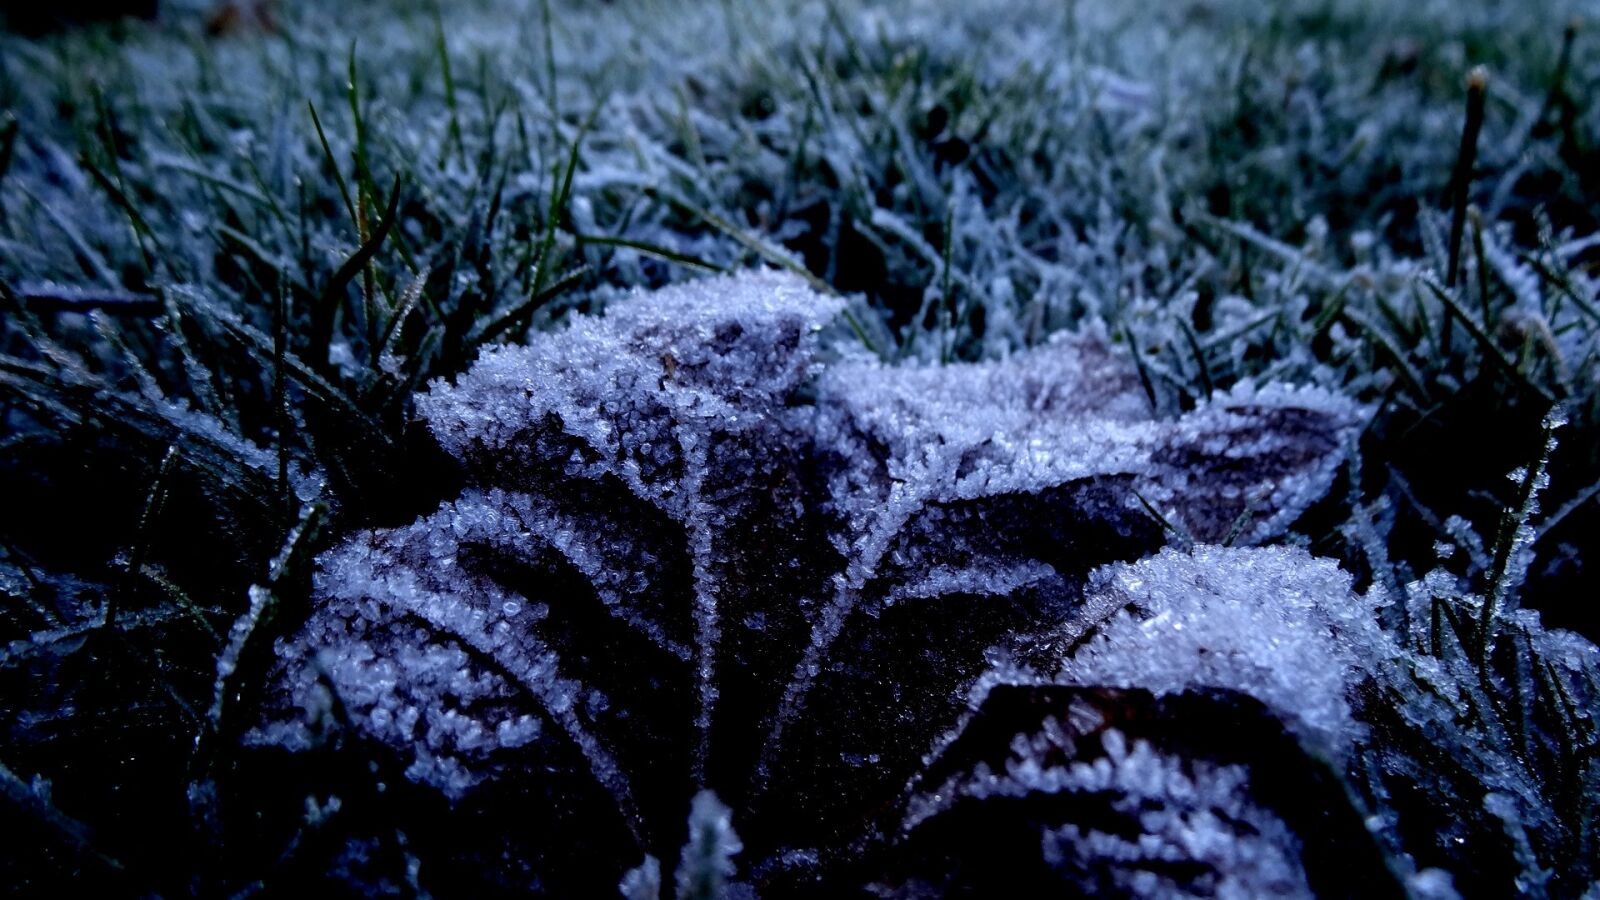 Sony Cyber-shot DSC-HX20V sample photo. Frost, nature, cold photography